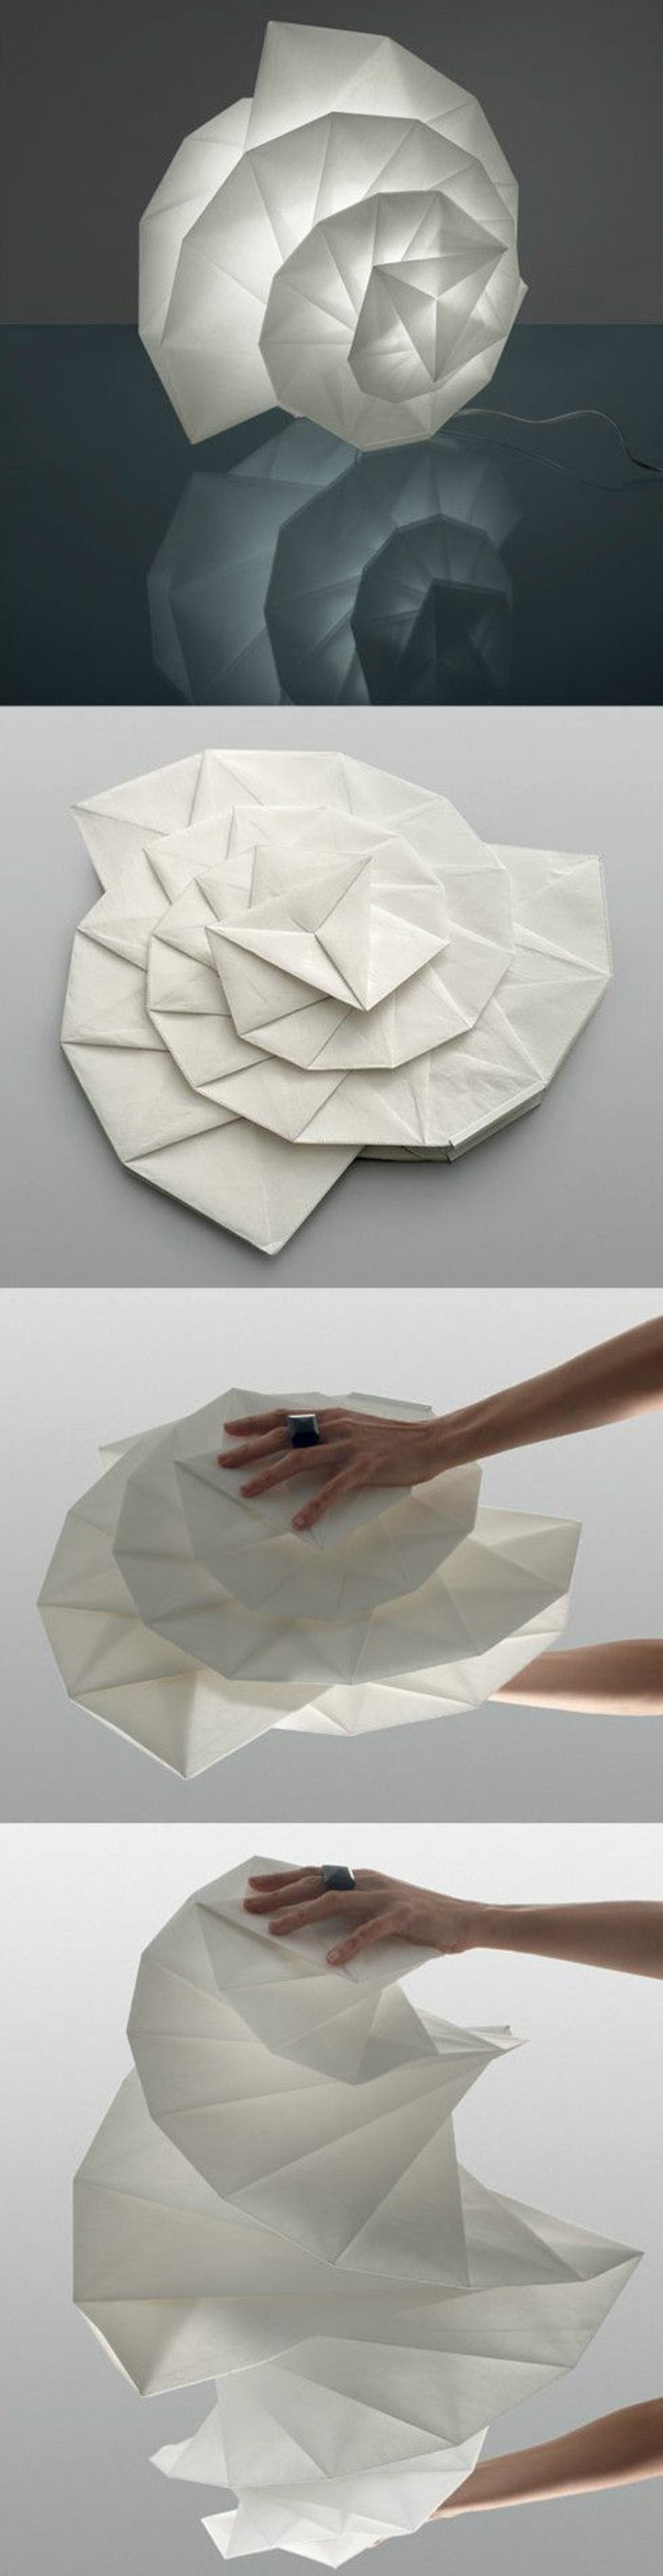 Lampe selber bauen - weißer Origami-Lampenschirm, den Sie falten können und seine Größe anpassen können